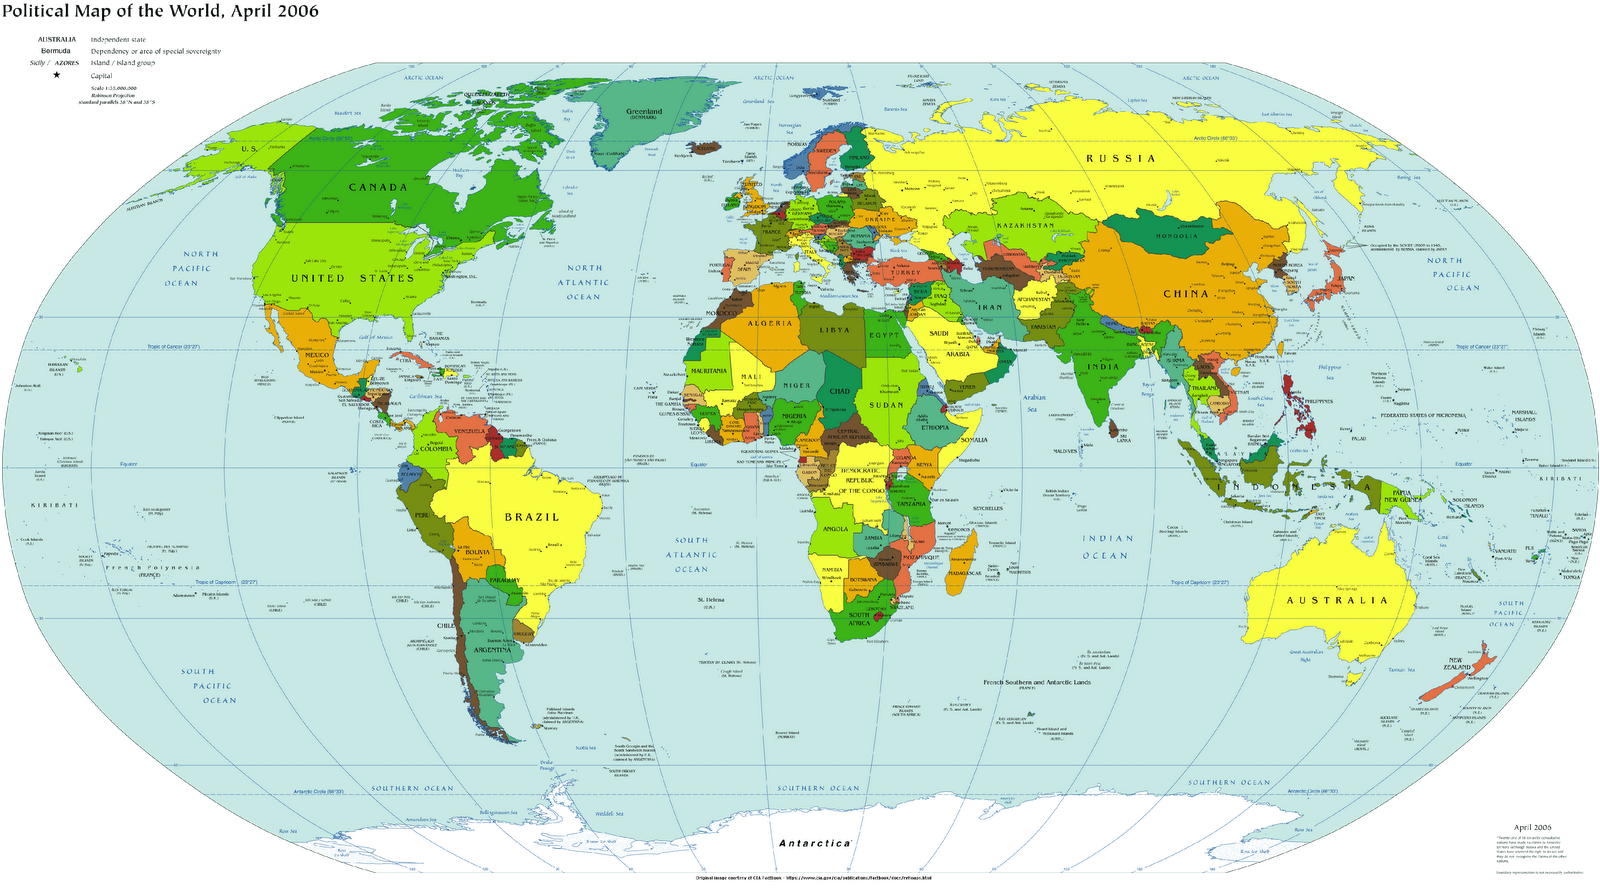 http://2.bp.blogspot.com/_uOIf_LbcK3M/SwhPOjHZOVI/AAAAAAAAAoU/3gUe0w1c0Ug/s1600/wallpaper-world-map-2006-large.gif